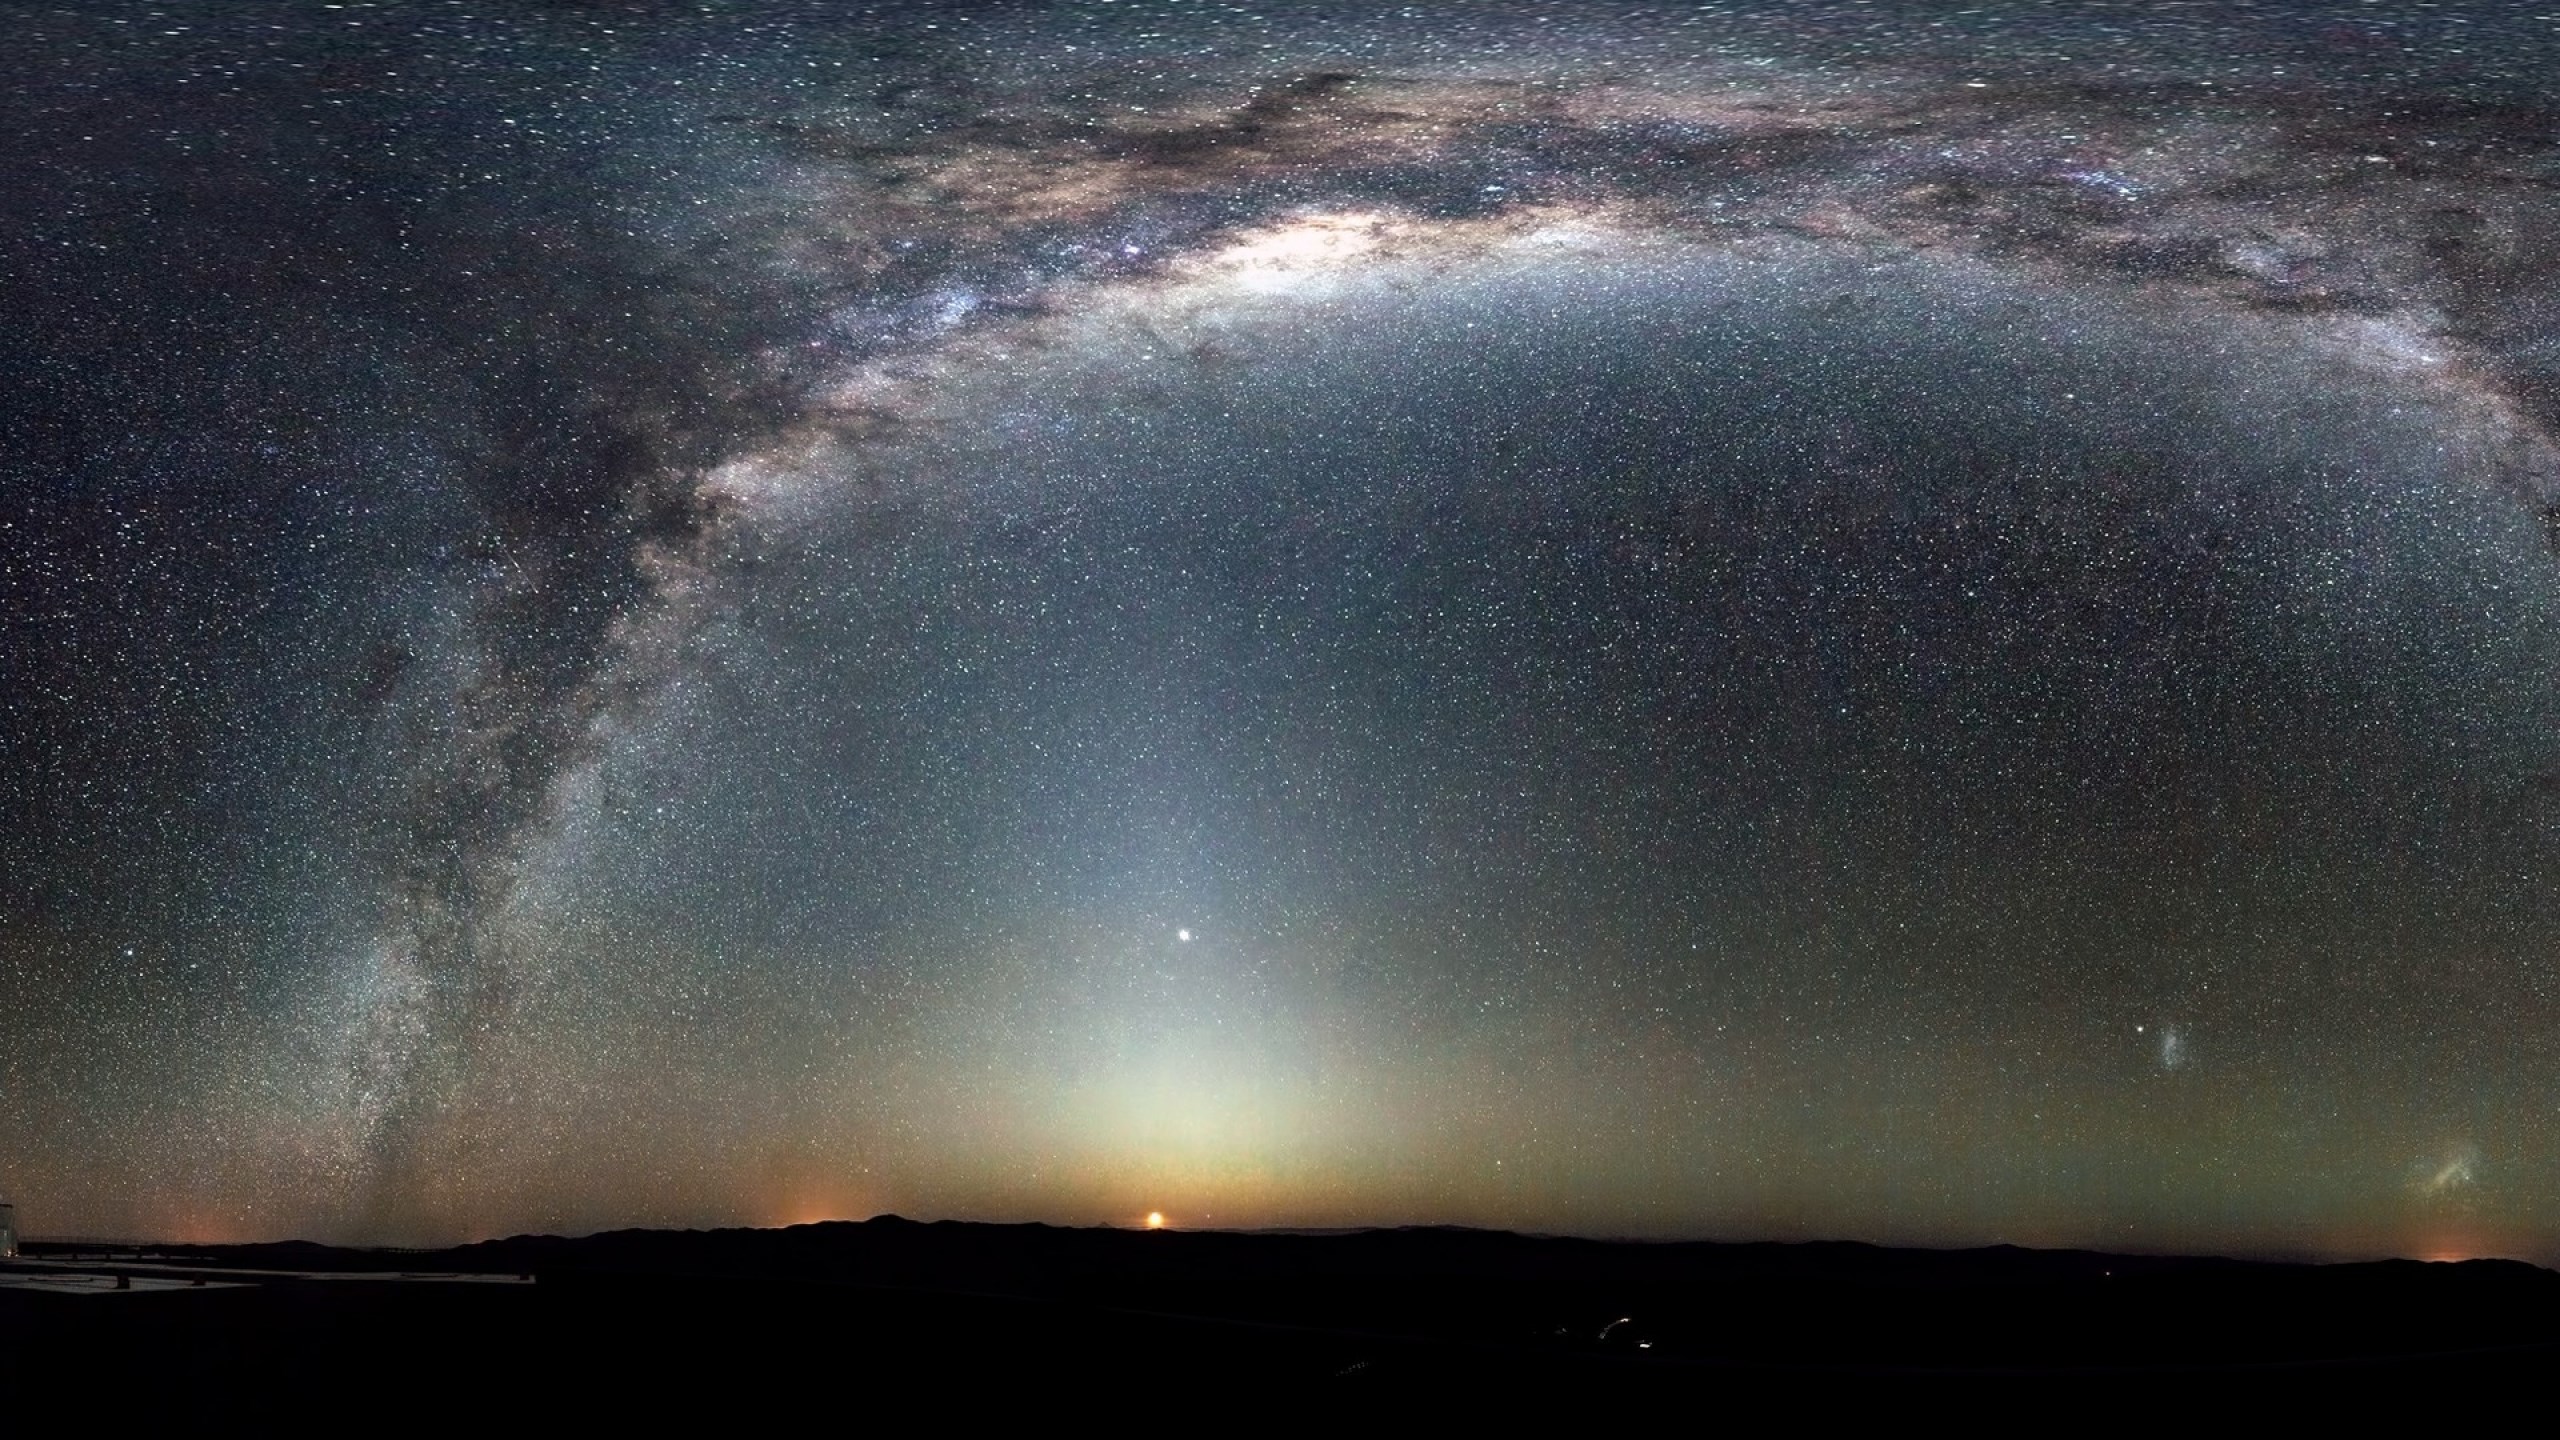 Млечный путь Галактика панорама